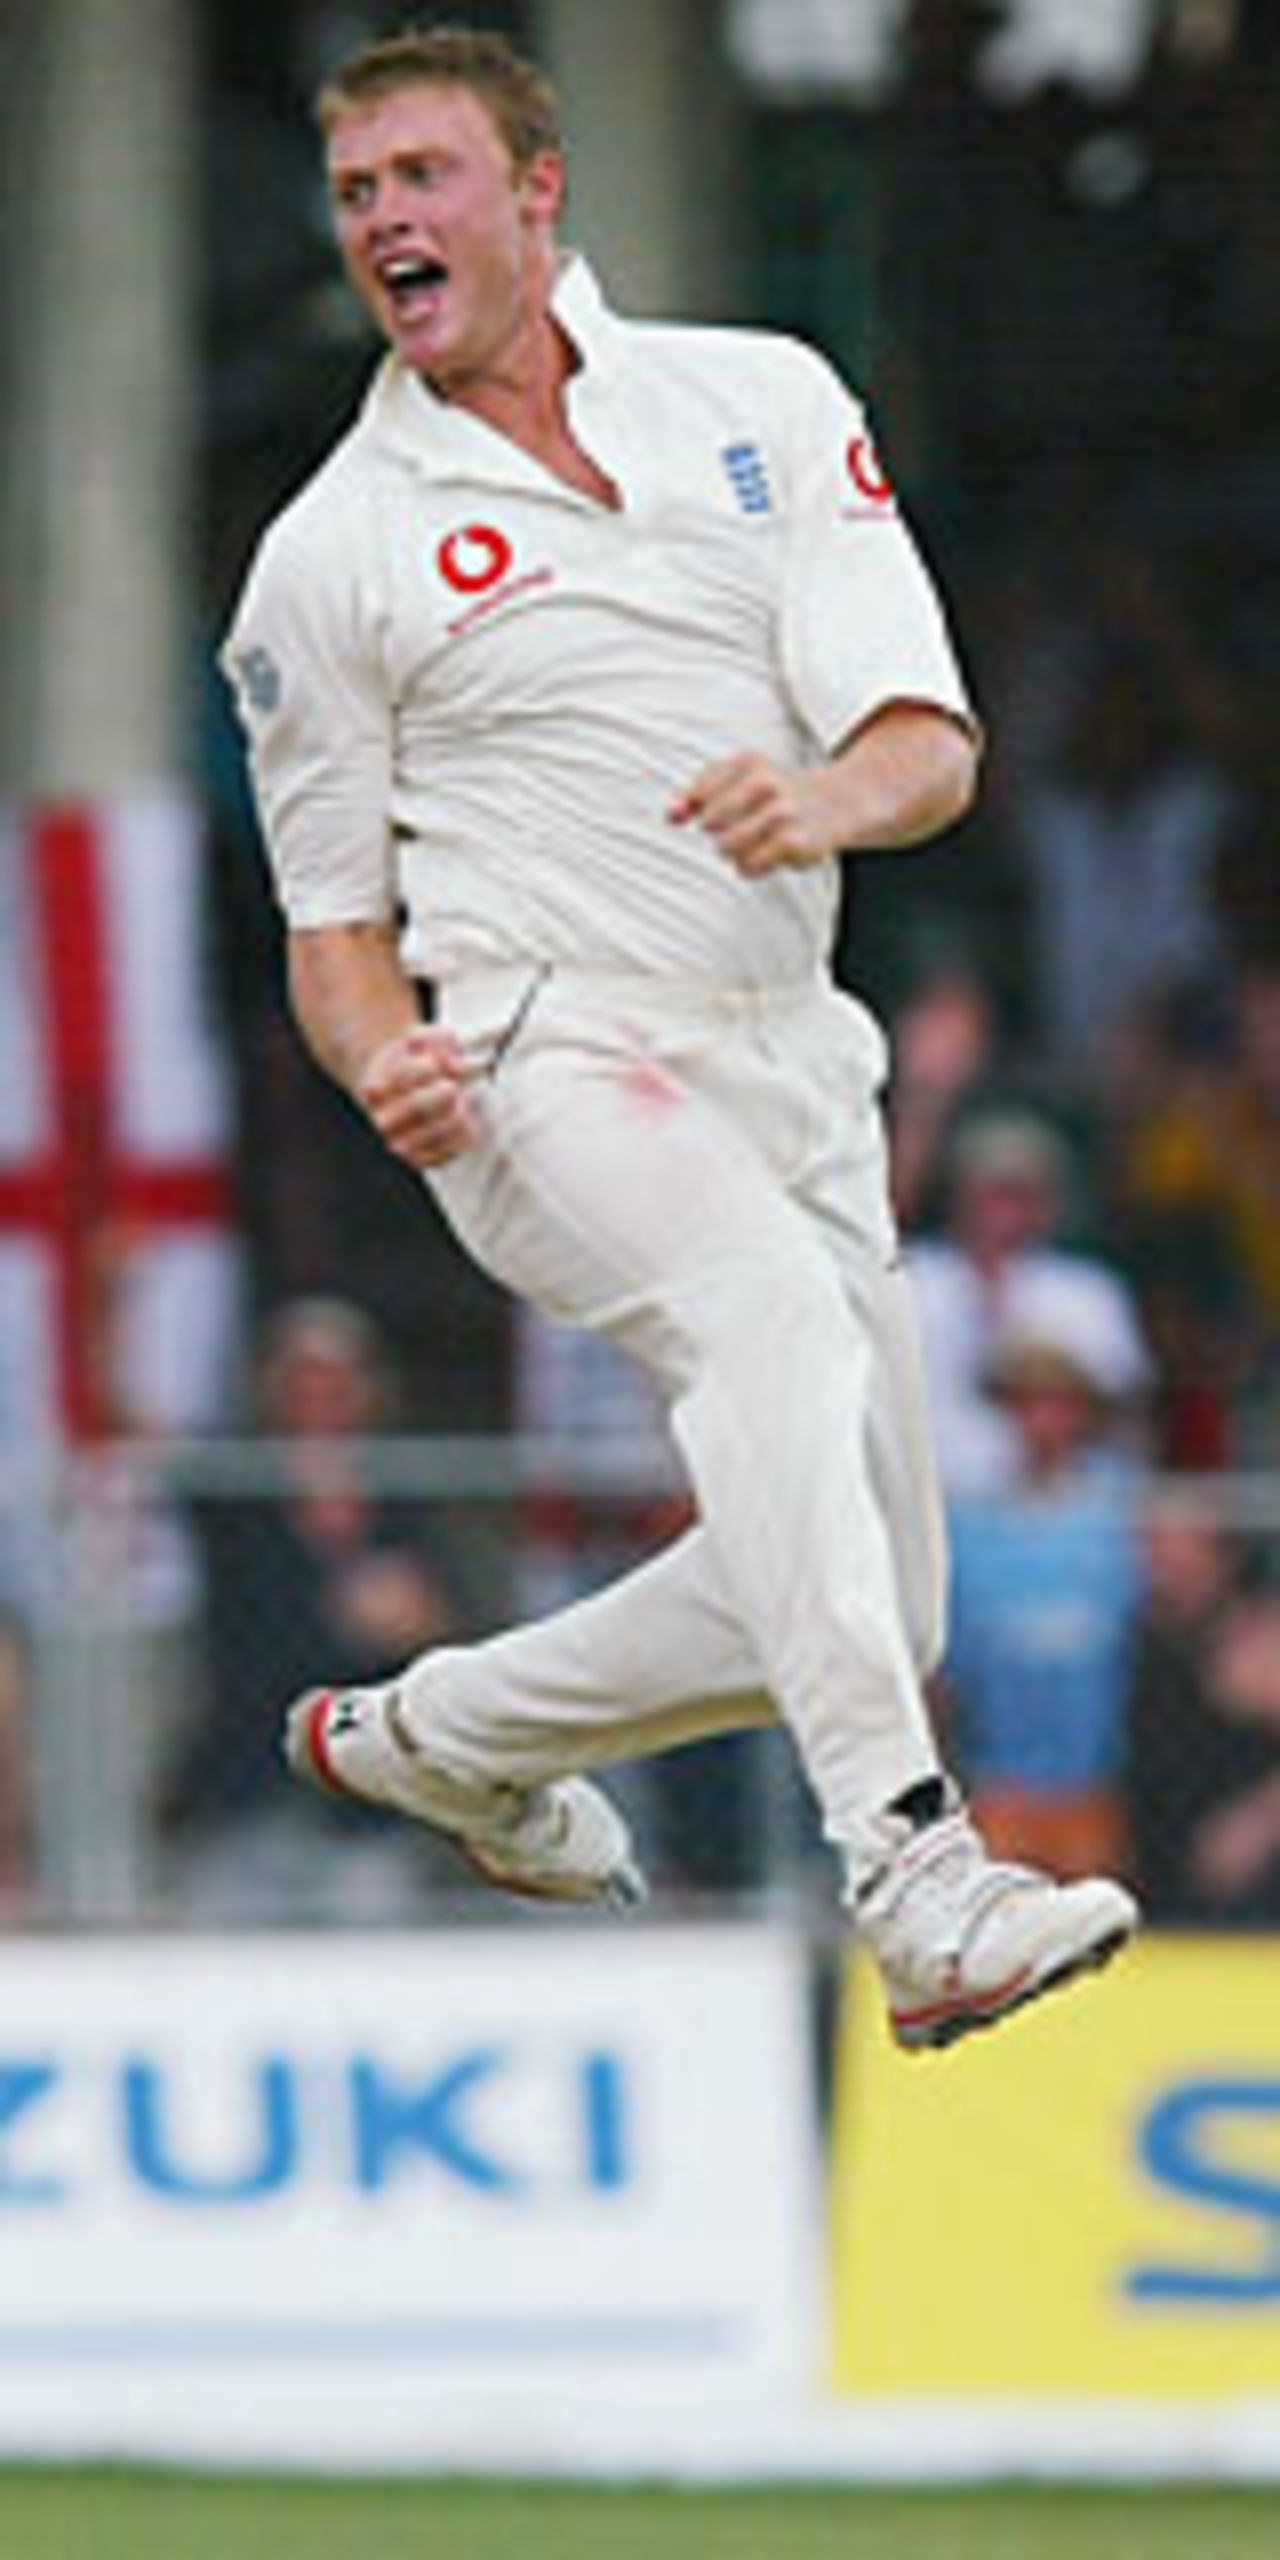 Andrew Flintoff celebrates after dismissing Tino Best, West Indies v England, 3rd Test, Barbados, April 3, 2004